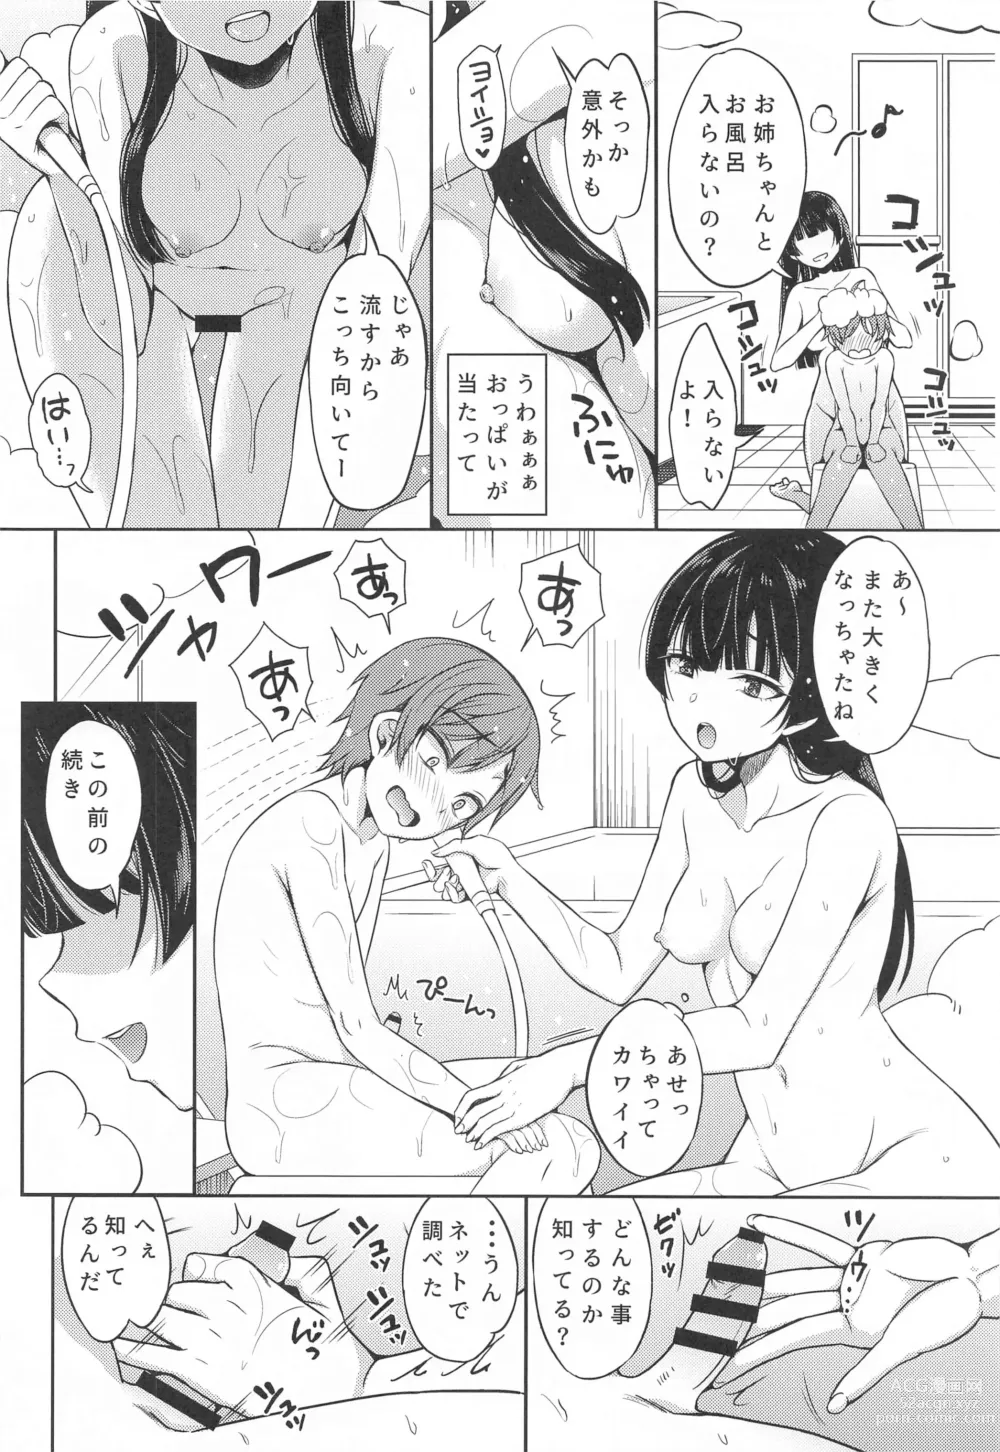 Page 13 of doujinshi Fuyusyota